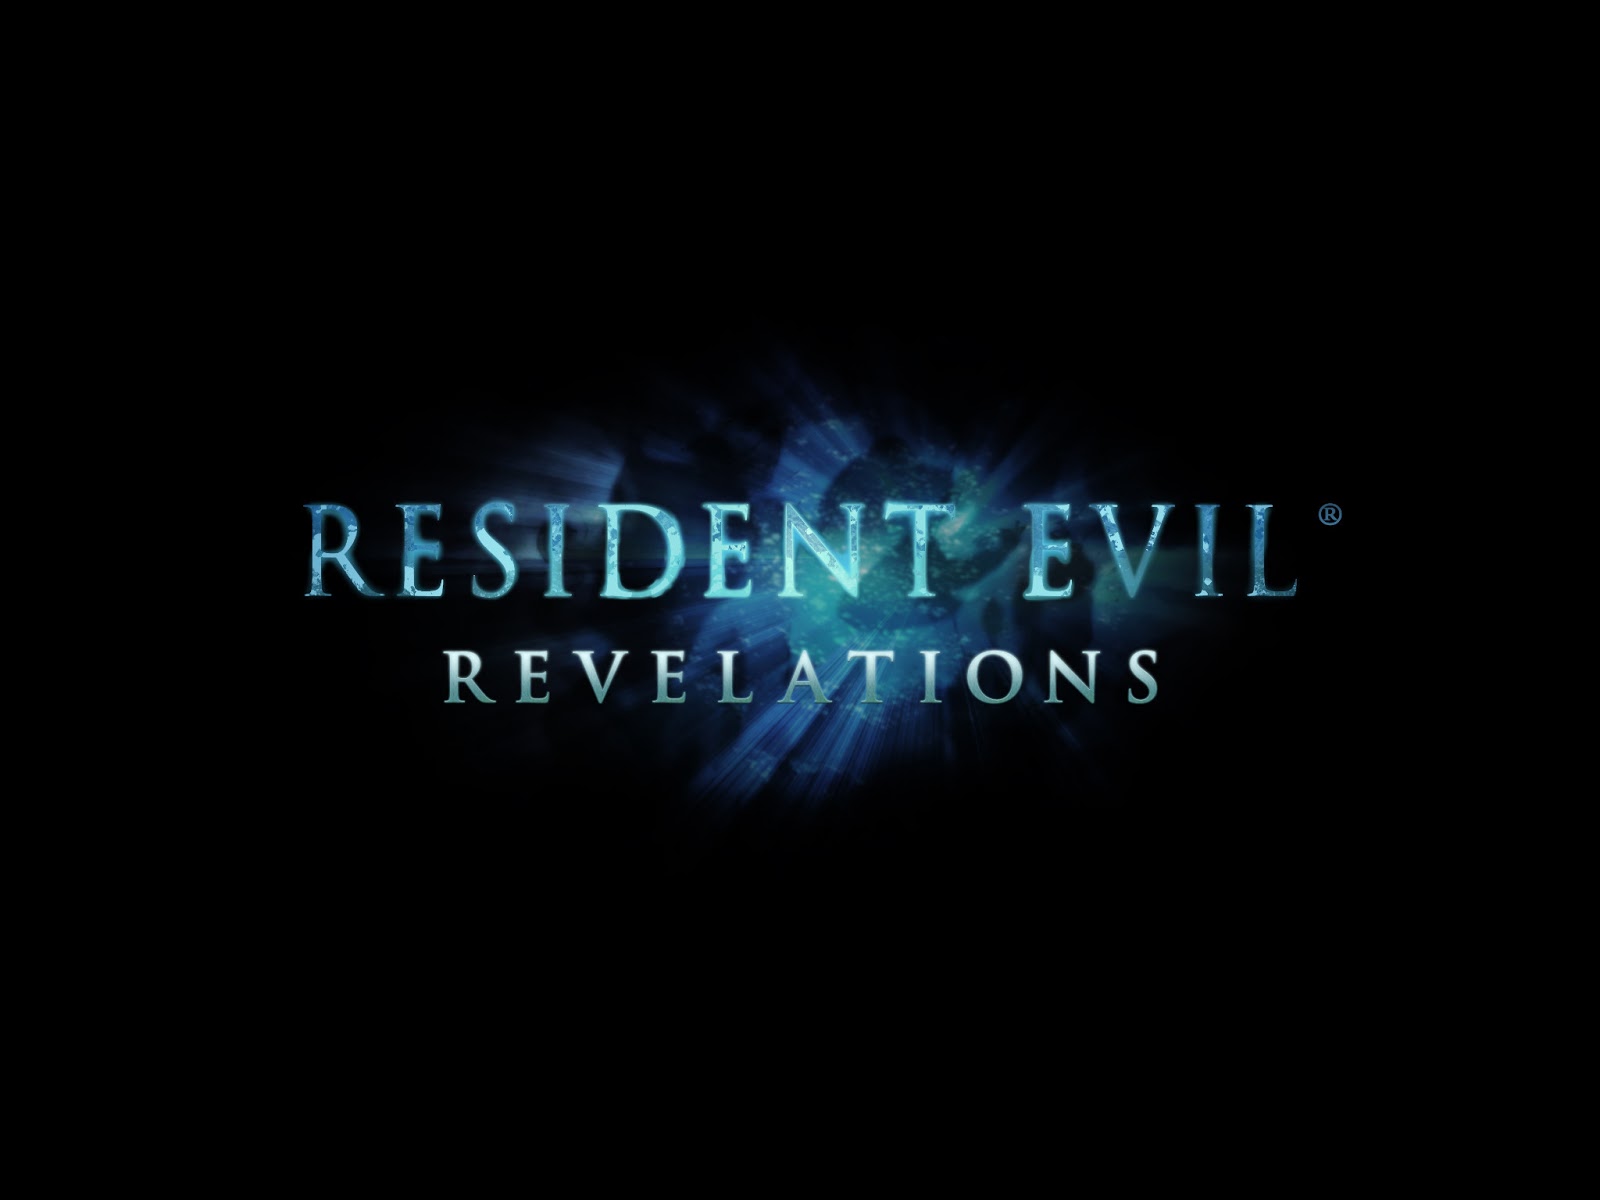 É possível que Resident Evil receba um reboot, afirma produtor Resident+Evil+Revelations